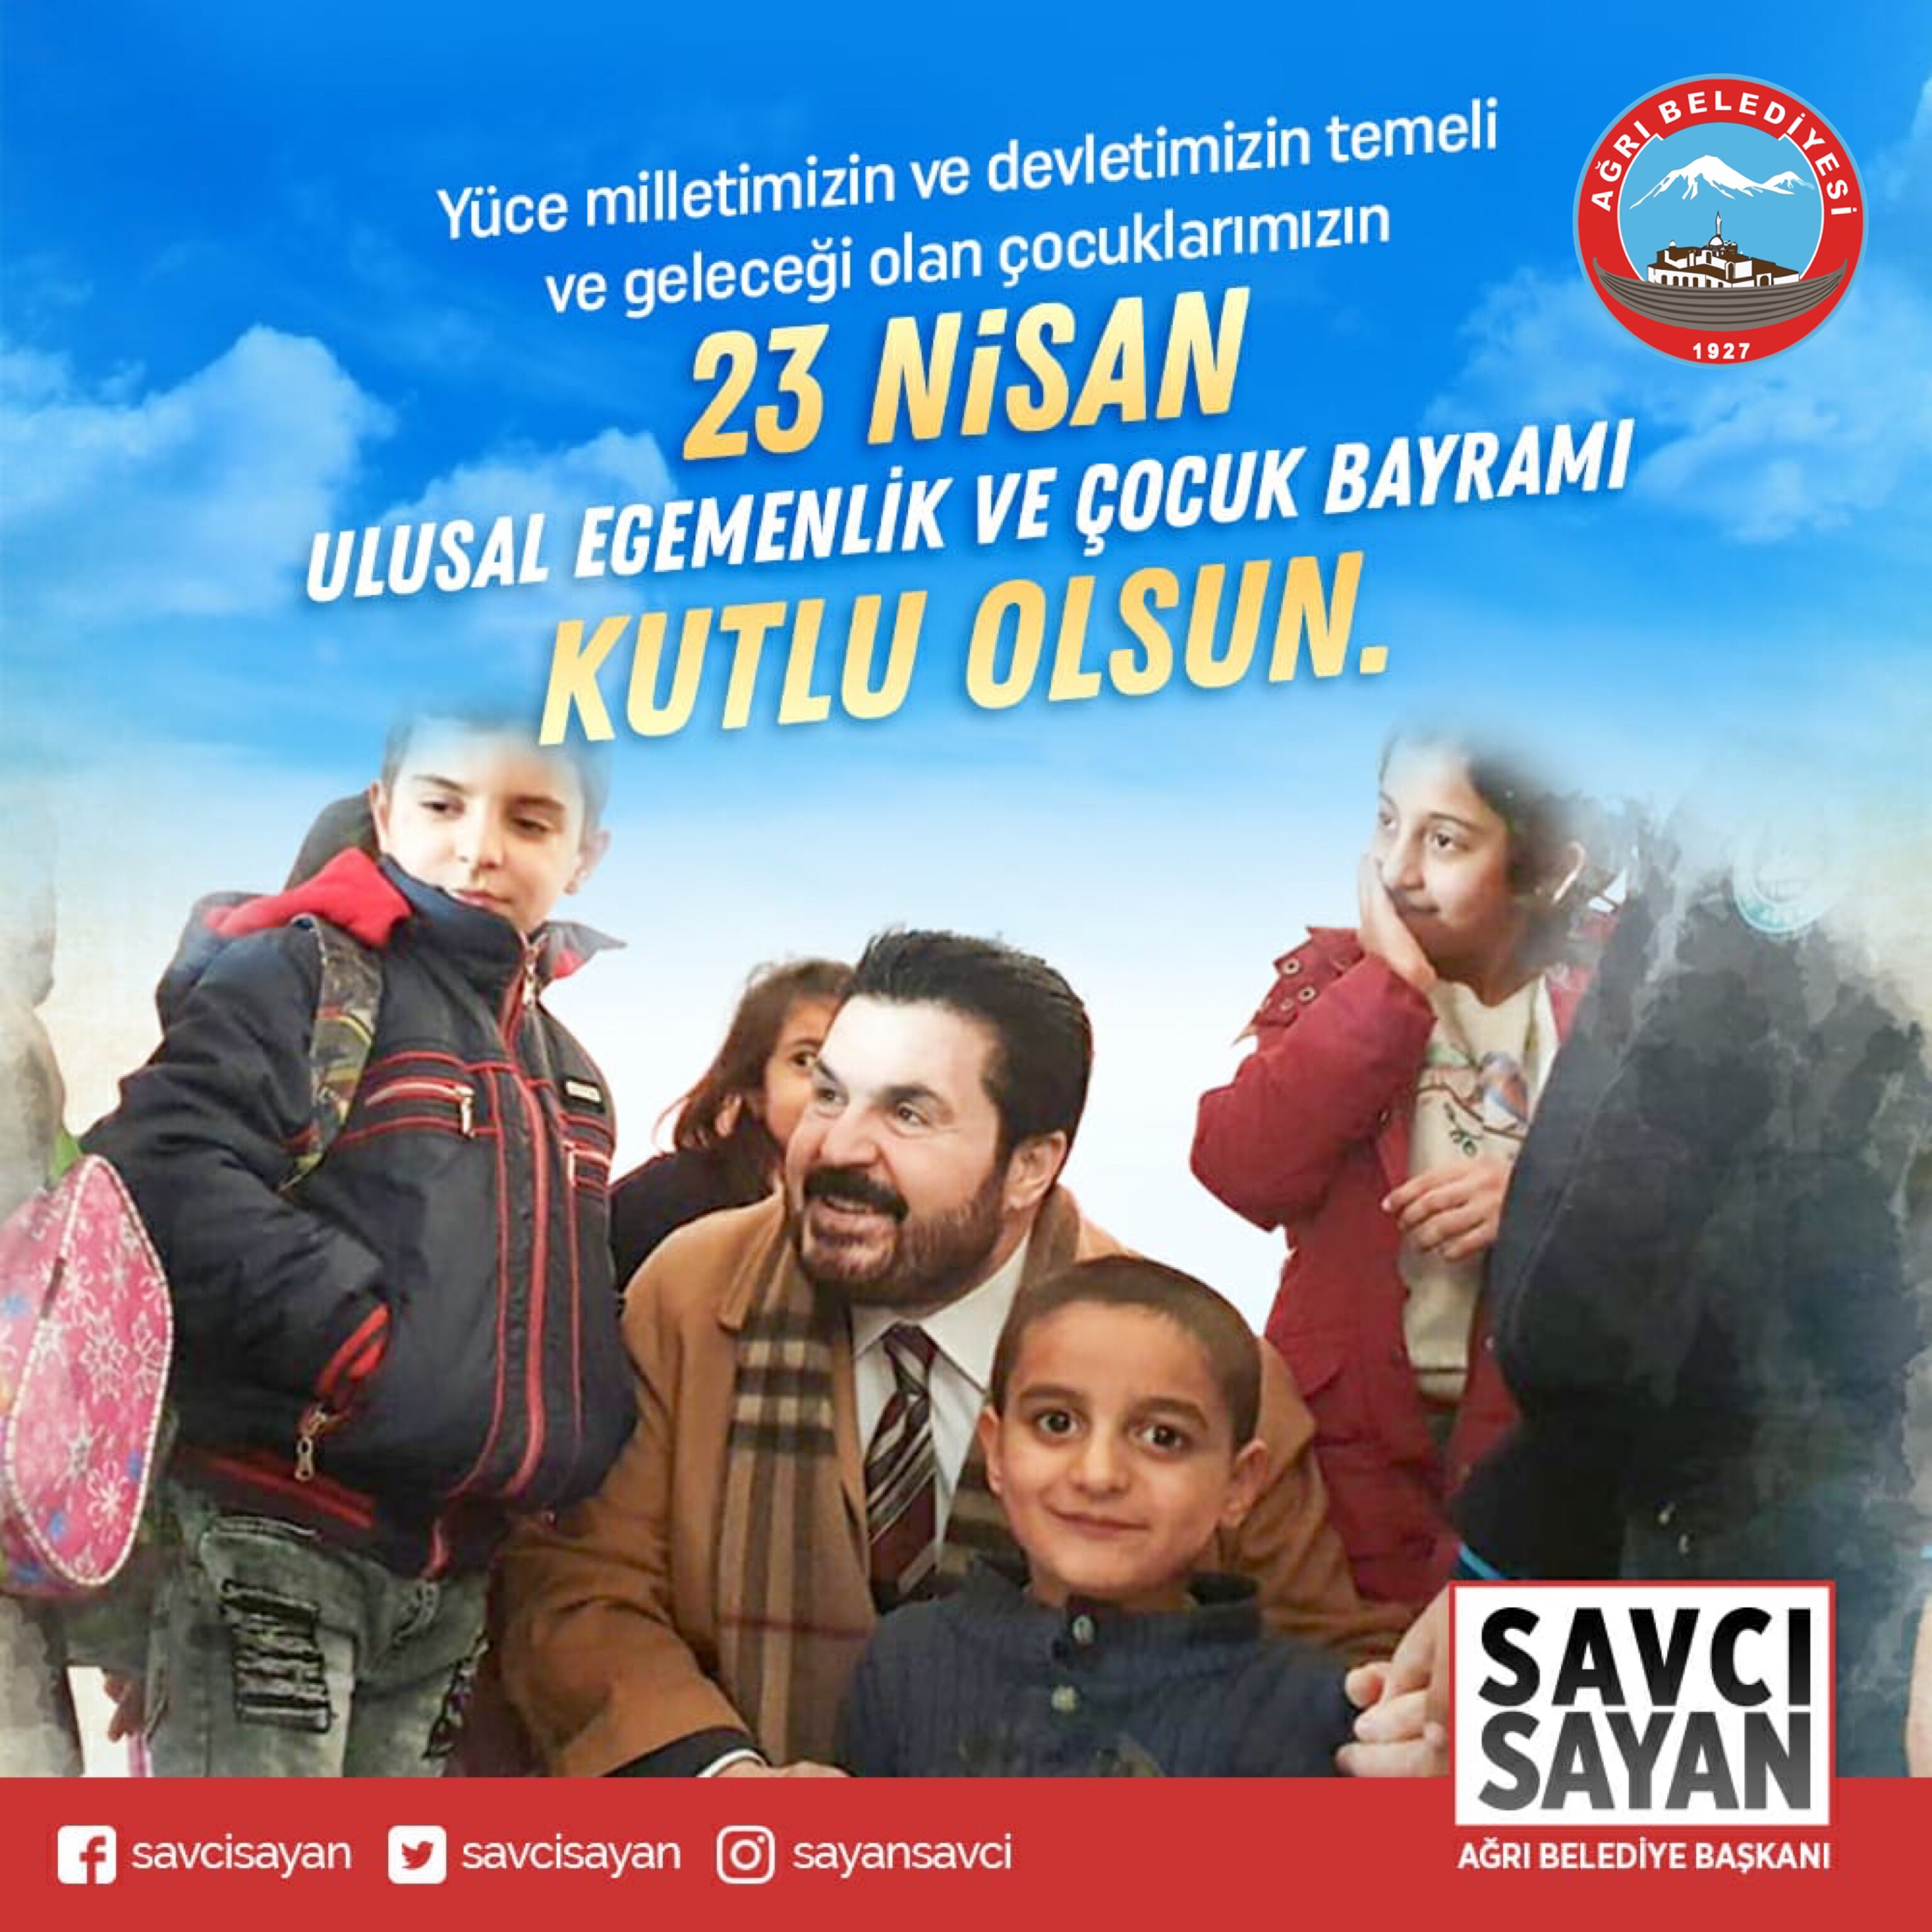 Başkan Sayan’ın 23 Nisan Ulusal Egemenlik ve Çocuk Bayramı Mesajı